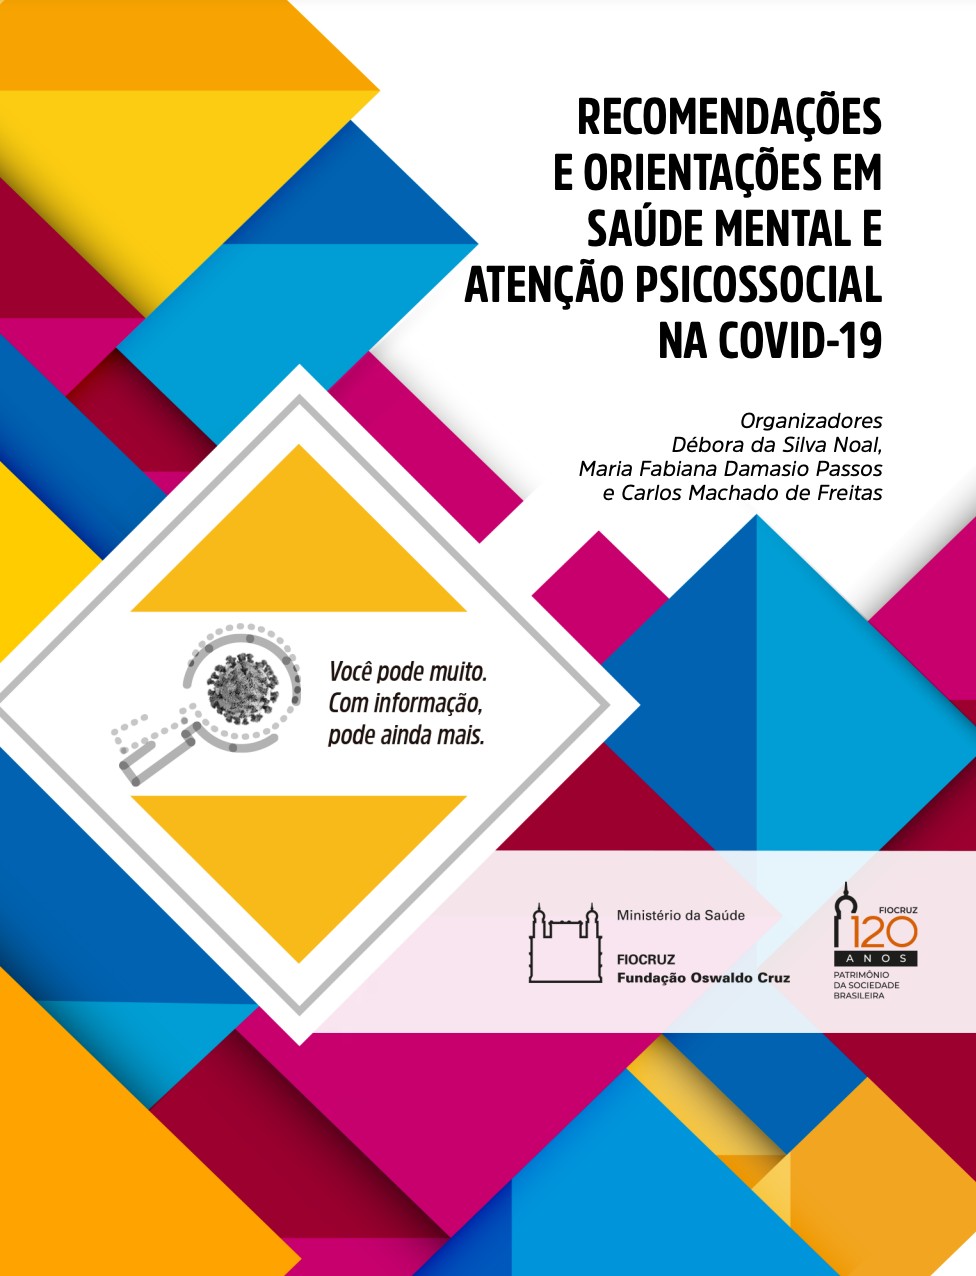 Recomendações e orientações em saúde mental e atenção psicossocial na Covid-19 (Foto: Reprodução)